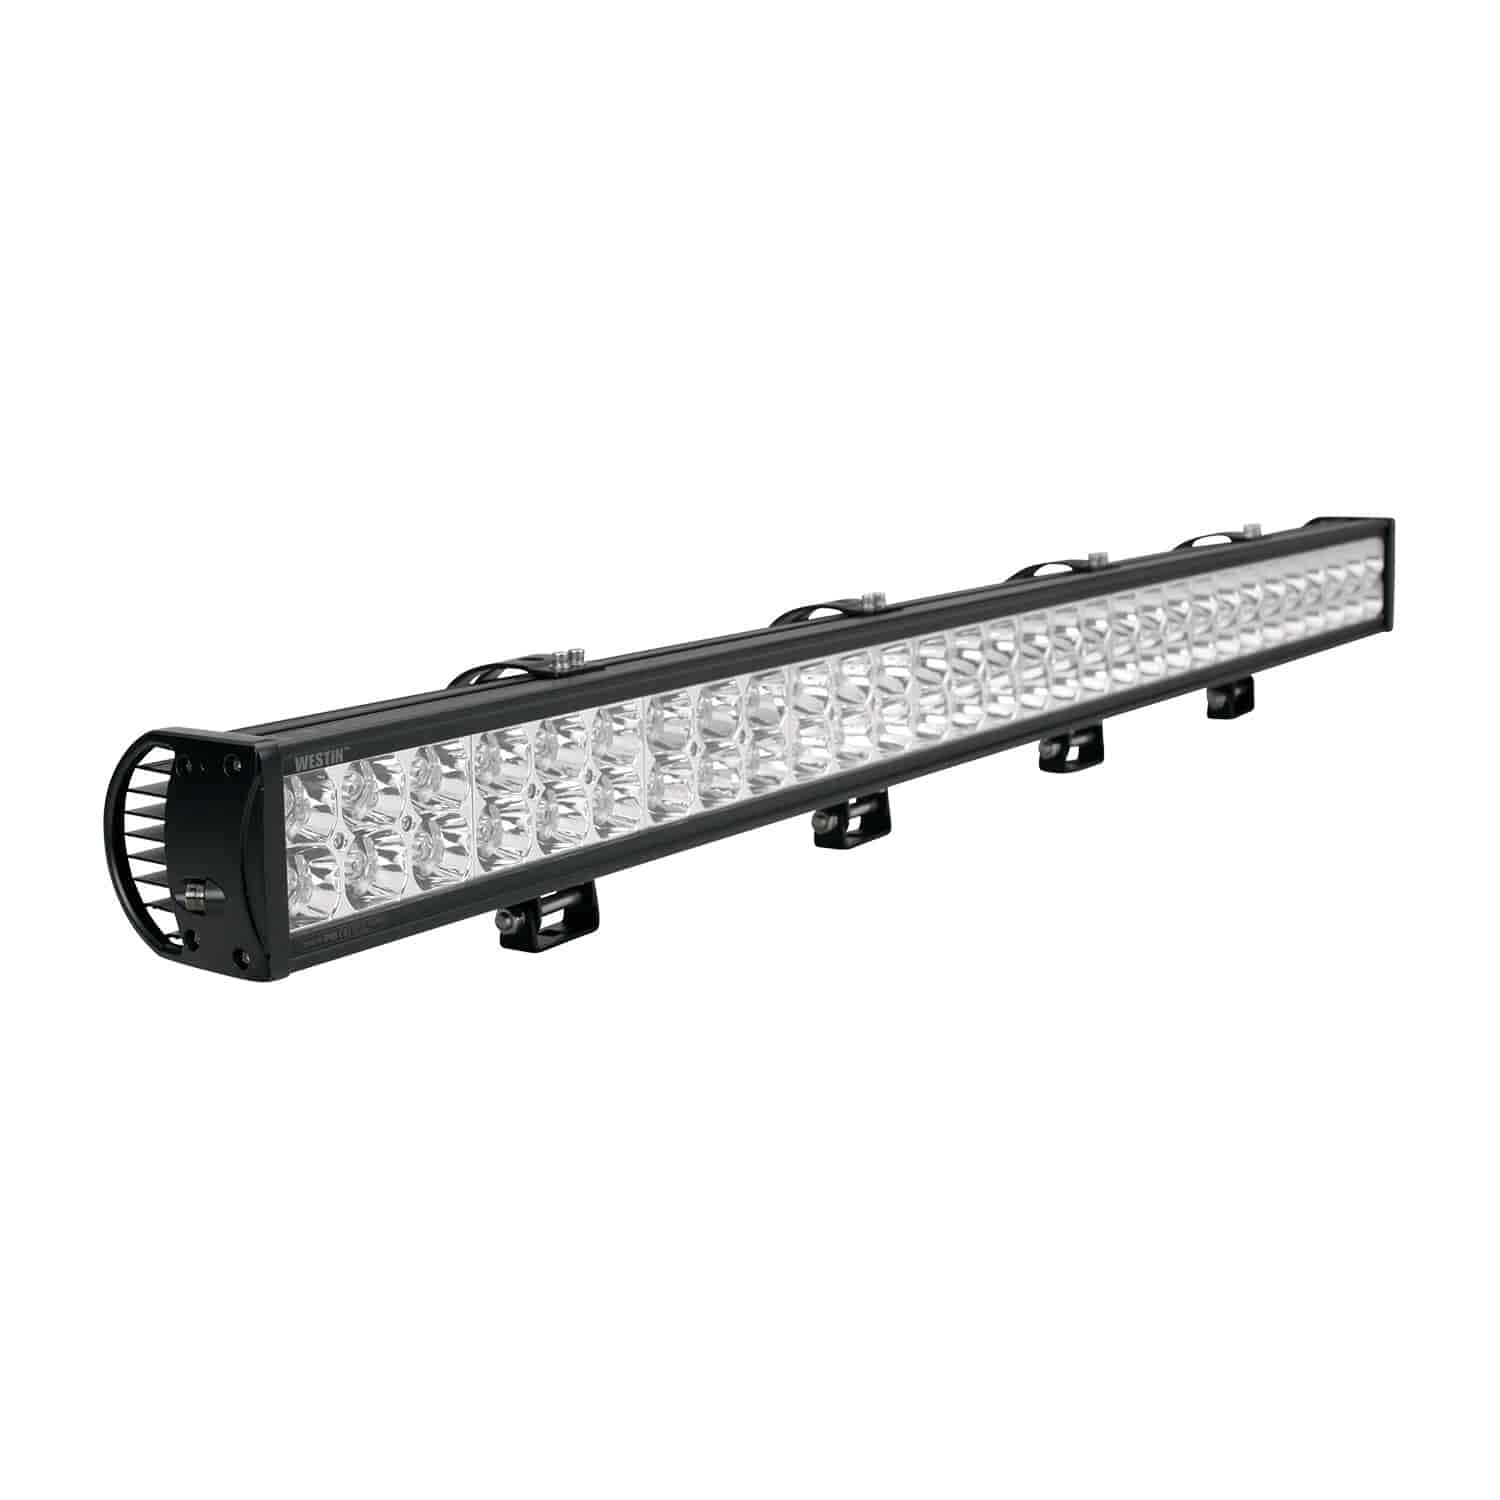 Double-Row LED Light Bar 50" Length